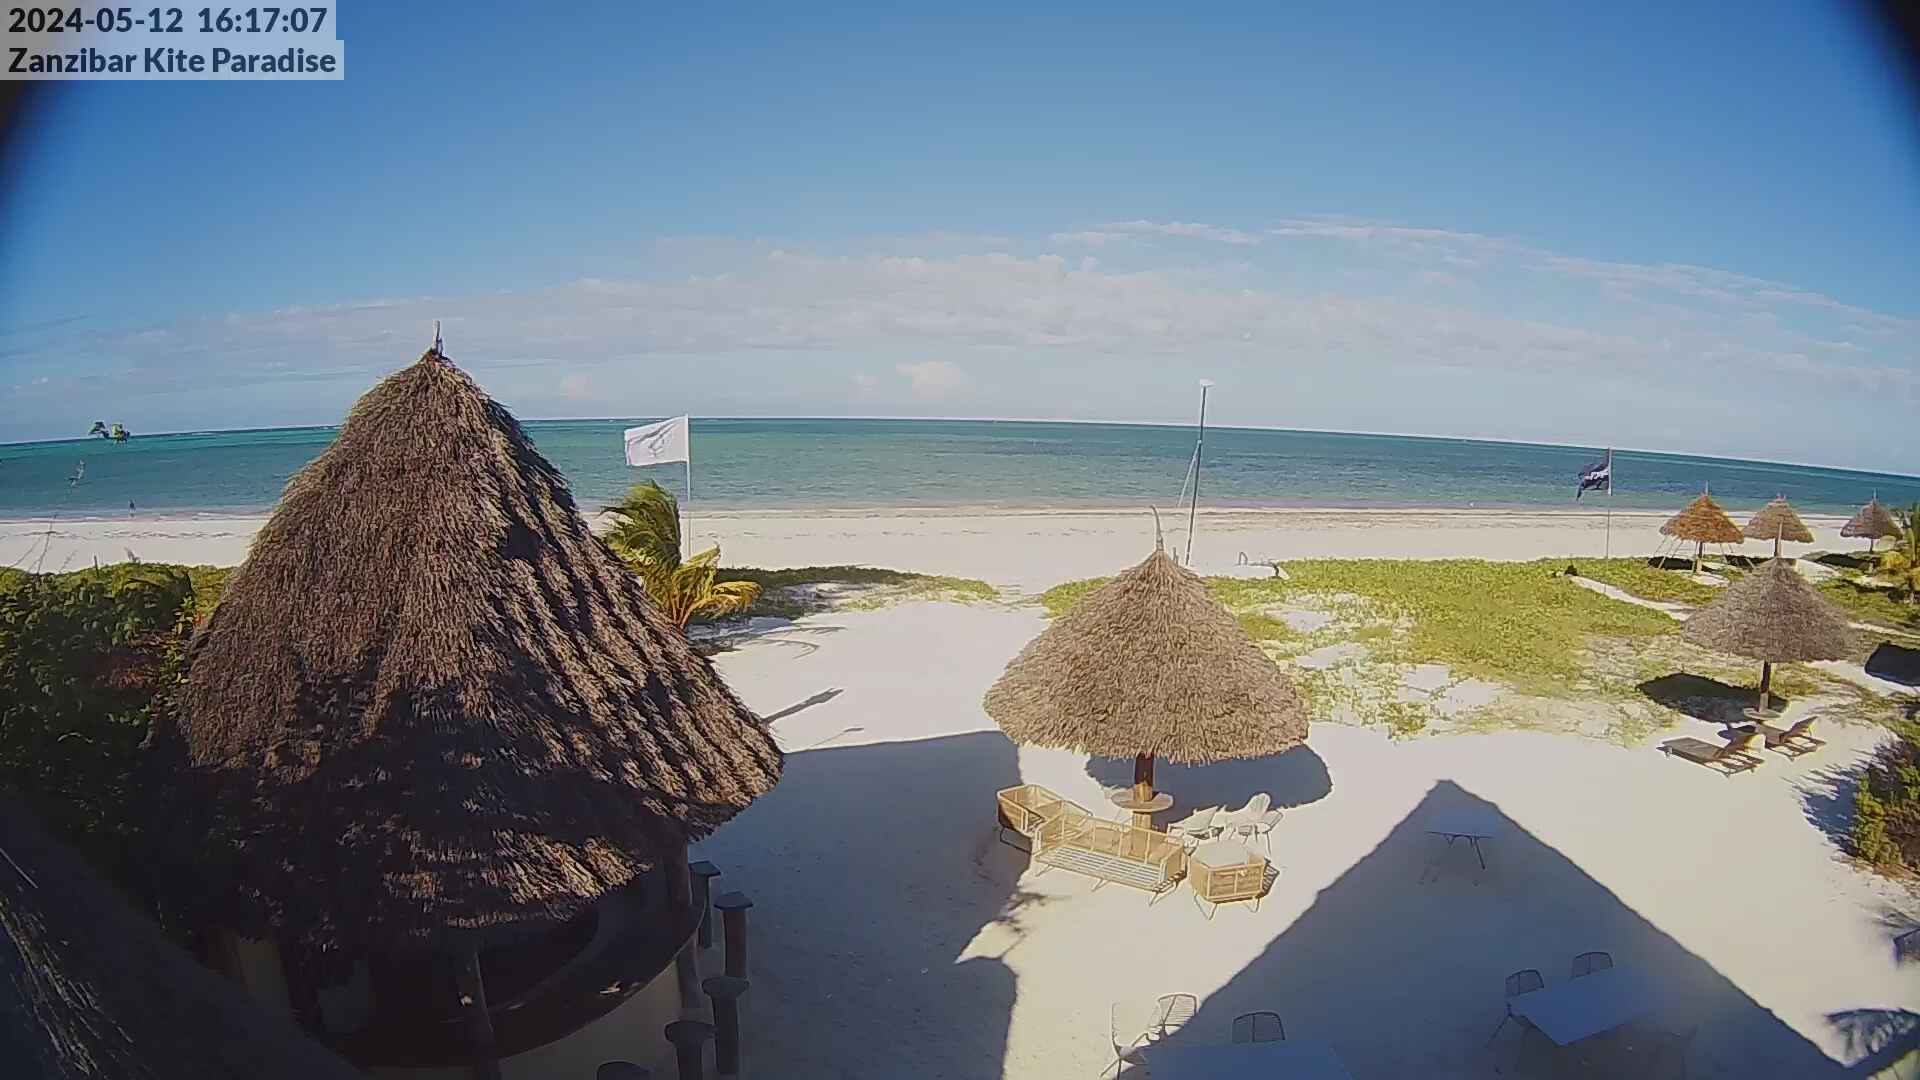 Paje Beach (Zanzibar) Mar. 16:18